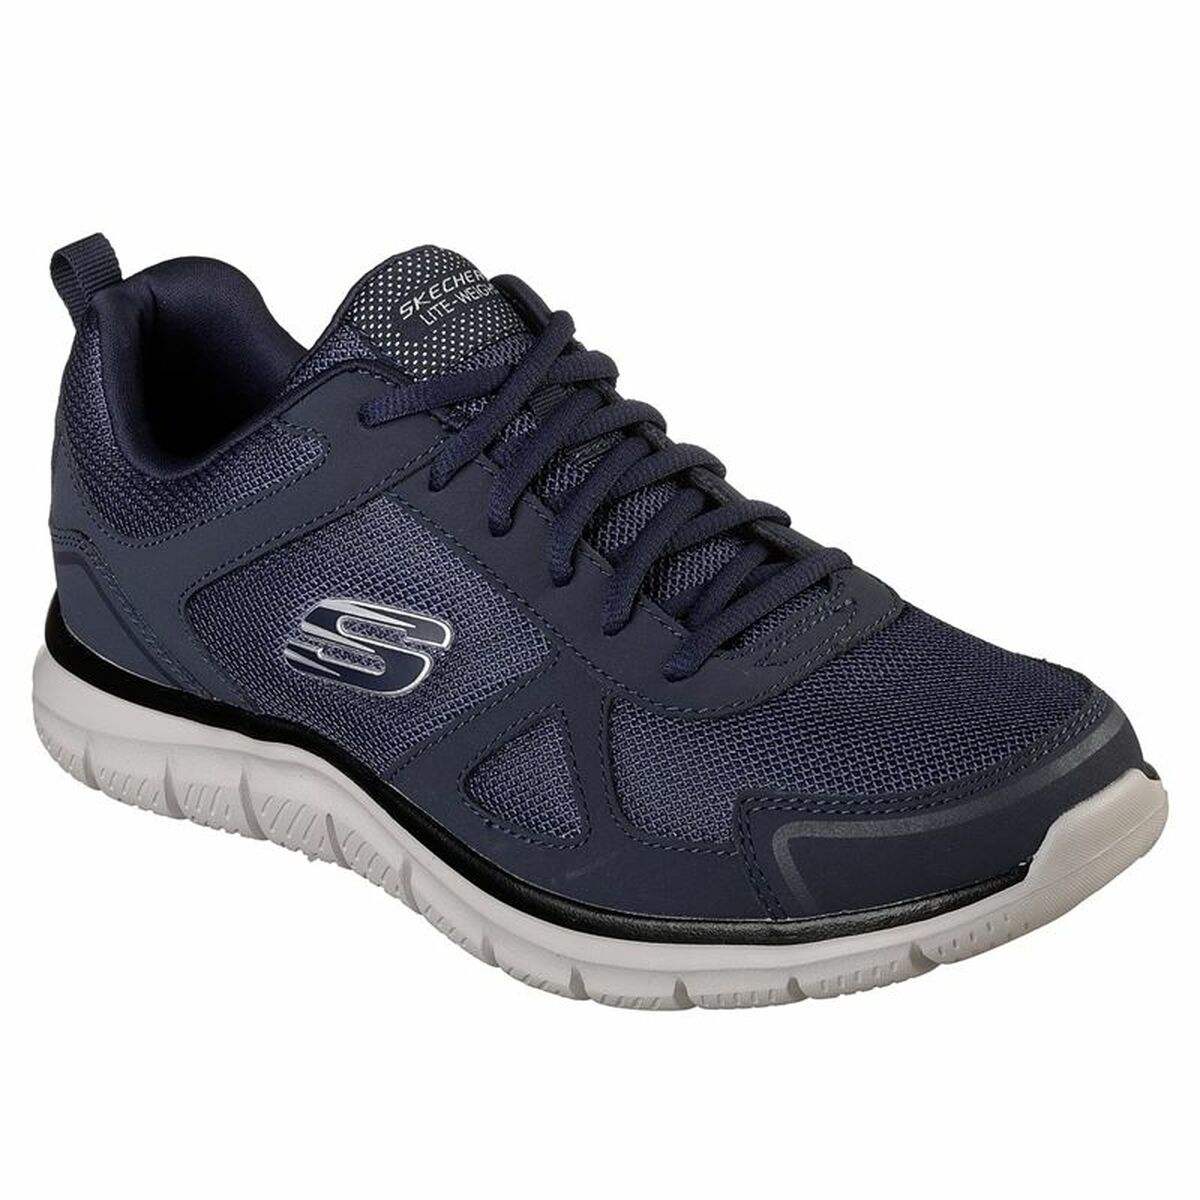 Chaussures casual homme Skechers Track - Sloric M Bleu foncé